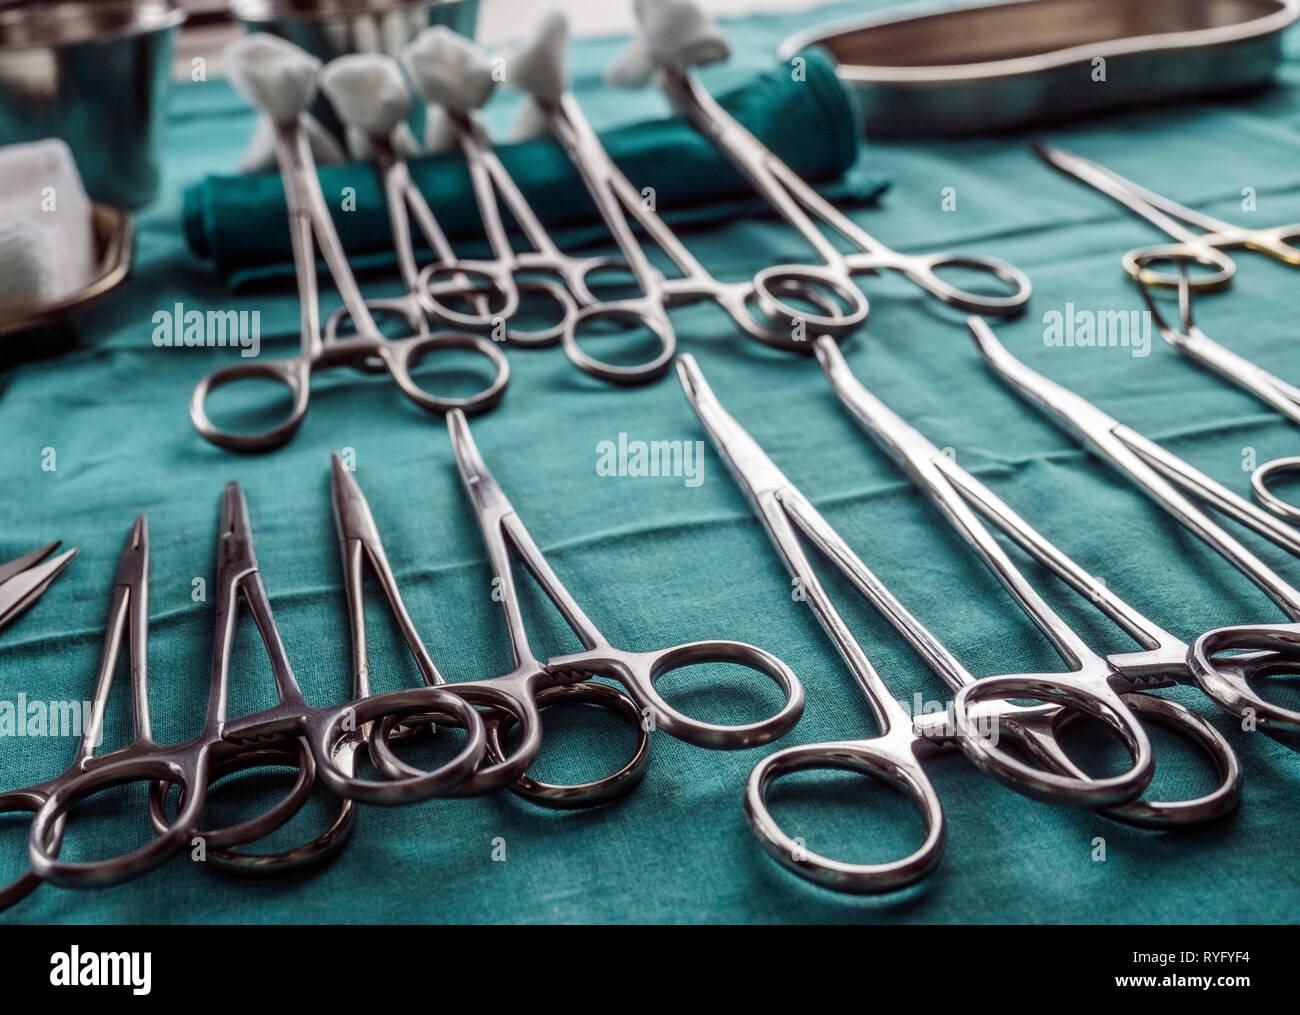 Chirurgische Schere mit torundas in einem Operationssaal, Zusammensetzung horizontale, konzeptionelle Bild Stockfoto